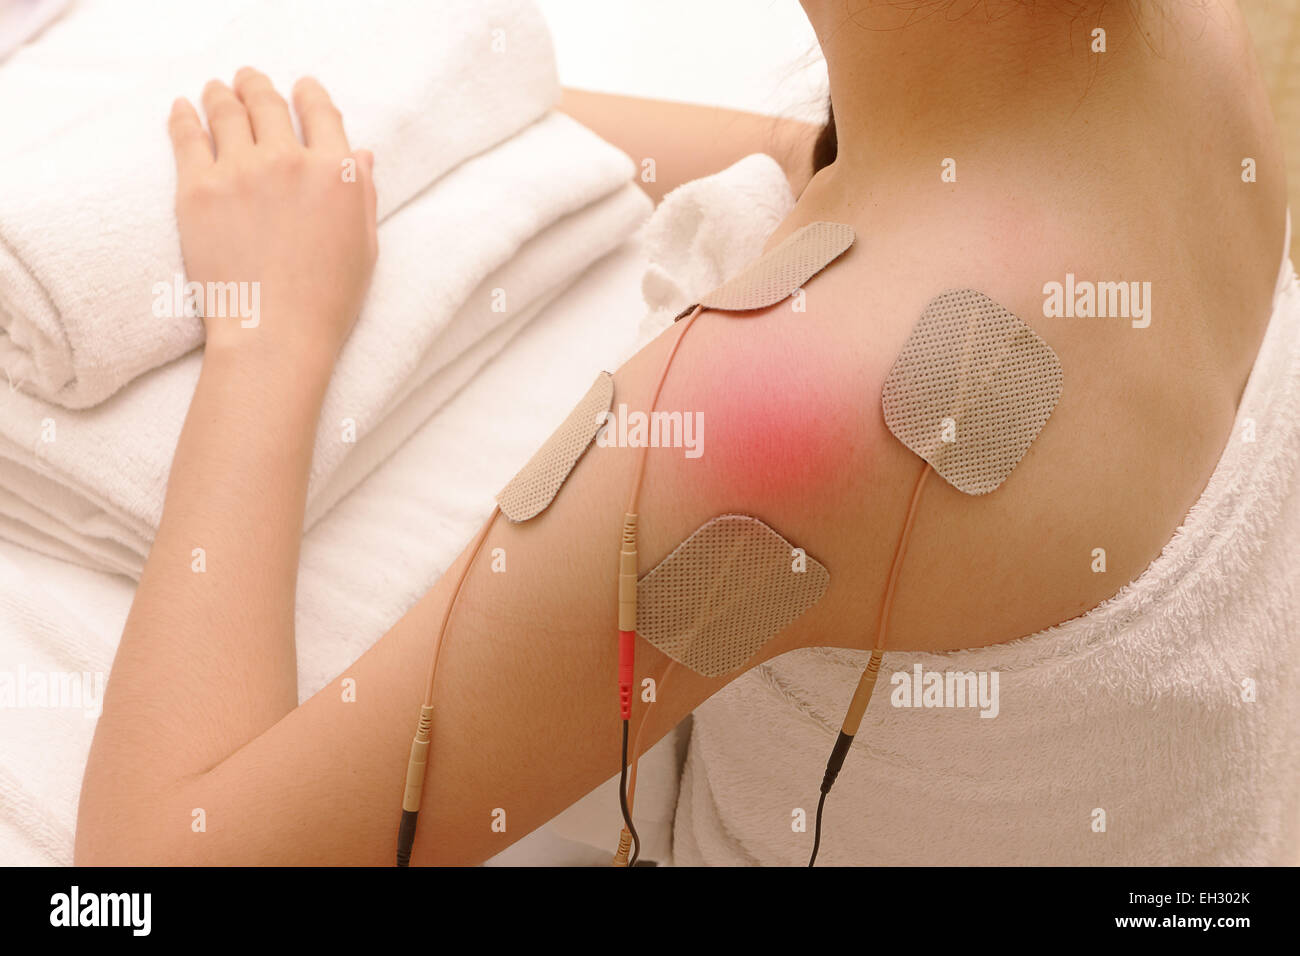 Asiatische Frau tut Massage der Elektro - Stimulation (TENs) für die Schulter Stockfoto